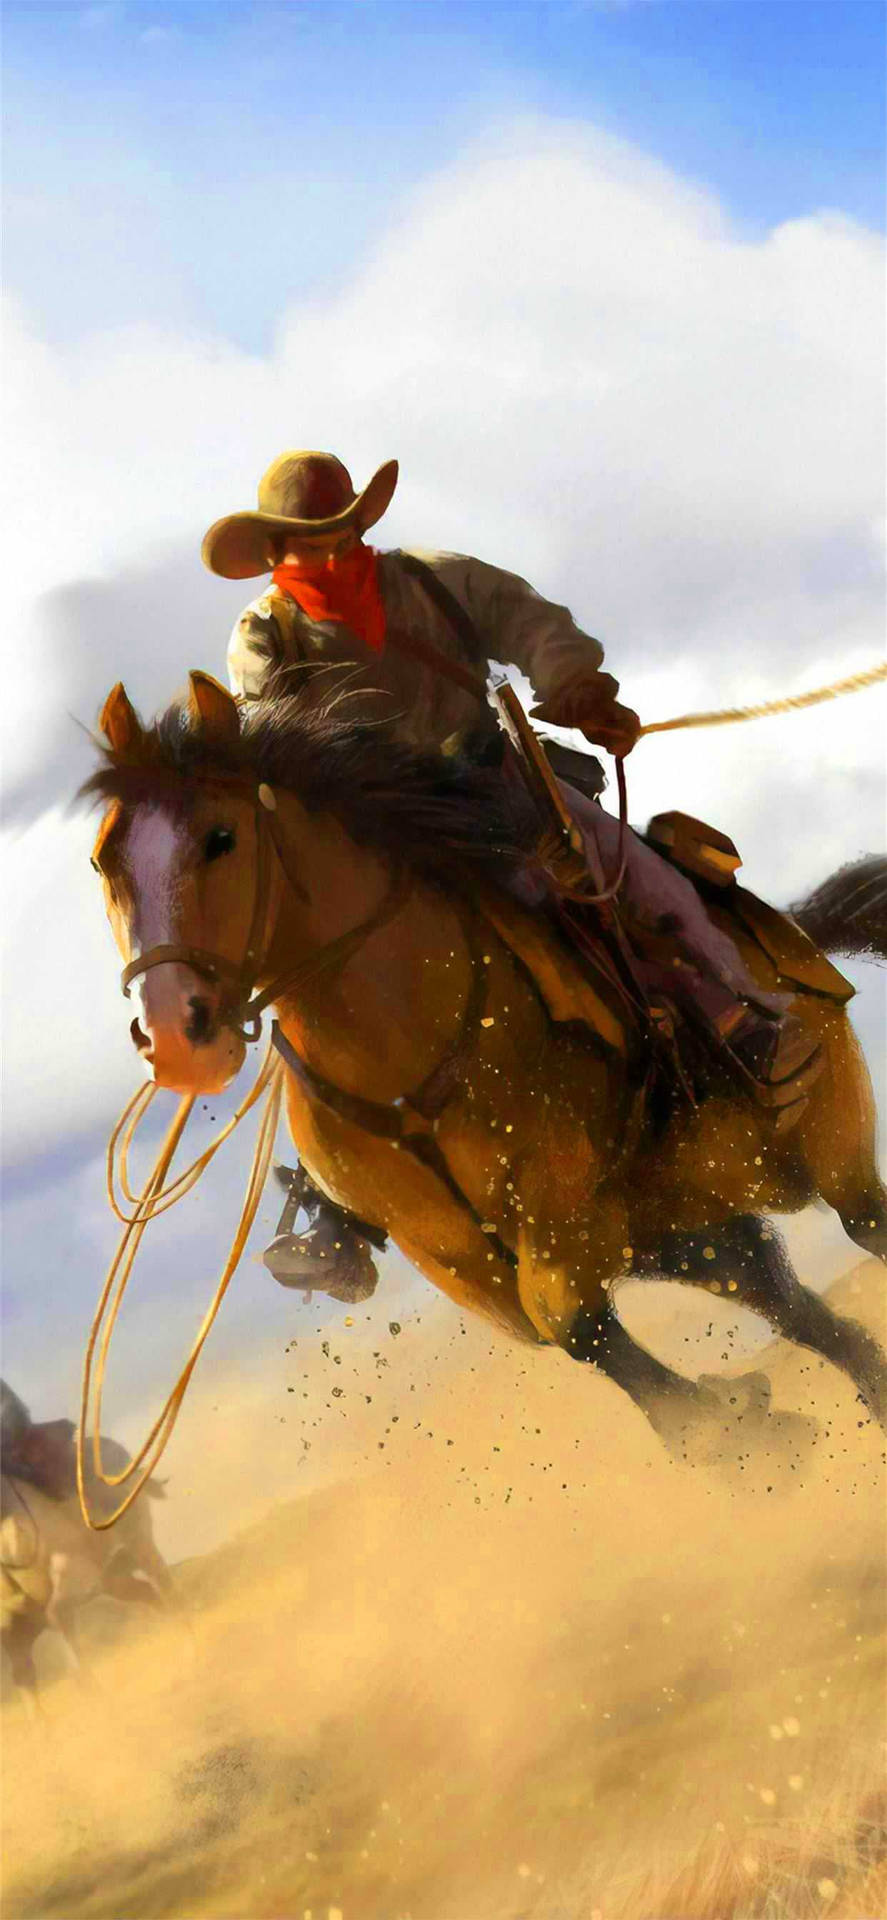 En stolt amerikansk cowboy, der viser sine imponerende rideskills. Wallpaper